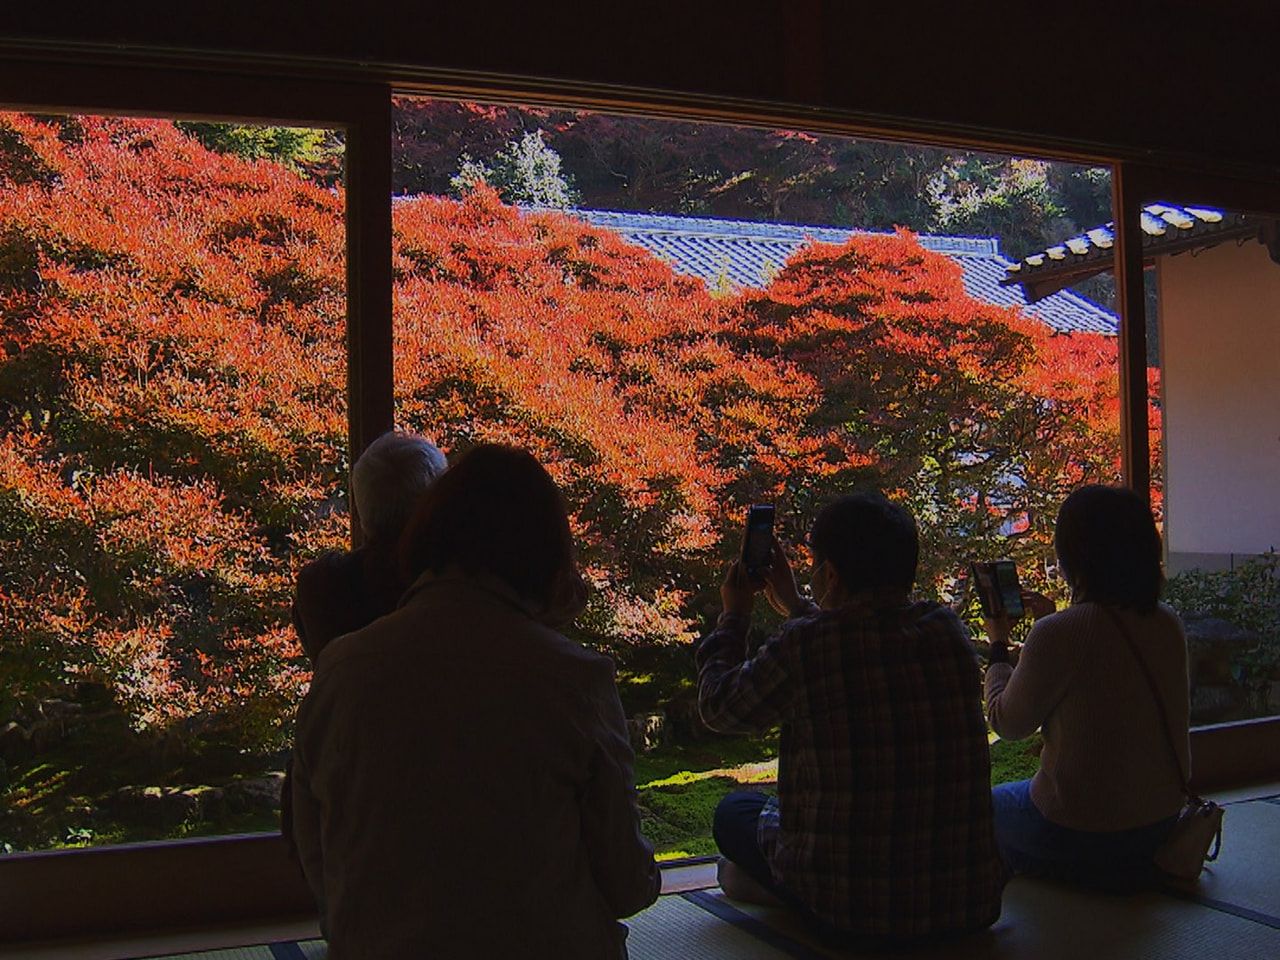 「だるま観音」として知られる岐阜市の大龍寺で、ドウダンツツジの紅葉が見ごろを迎え...